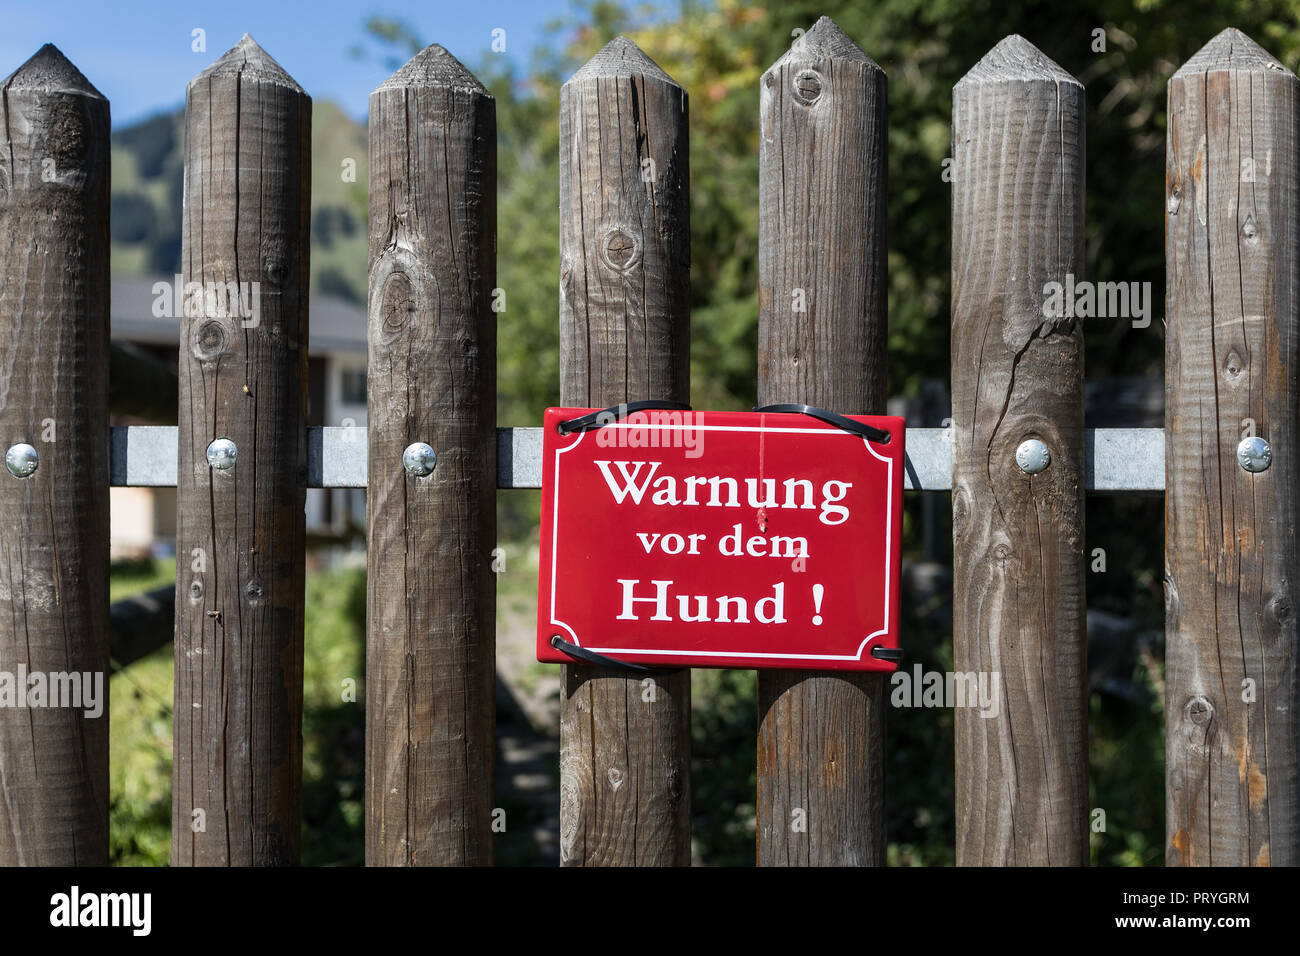 Red warning sign on garden fence, dog warning, Switzerland Stock Photo